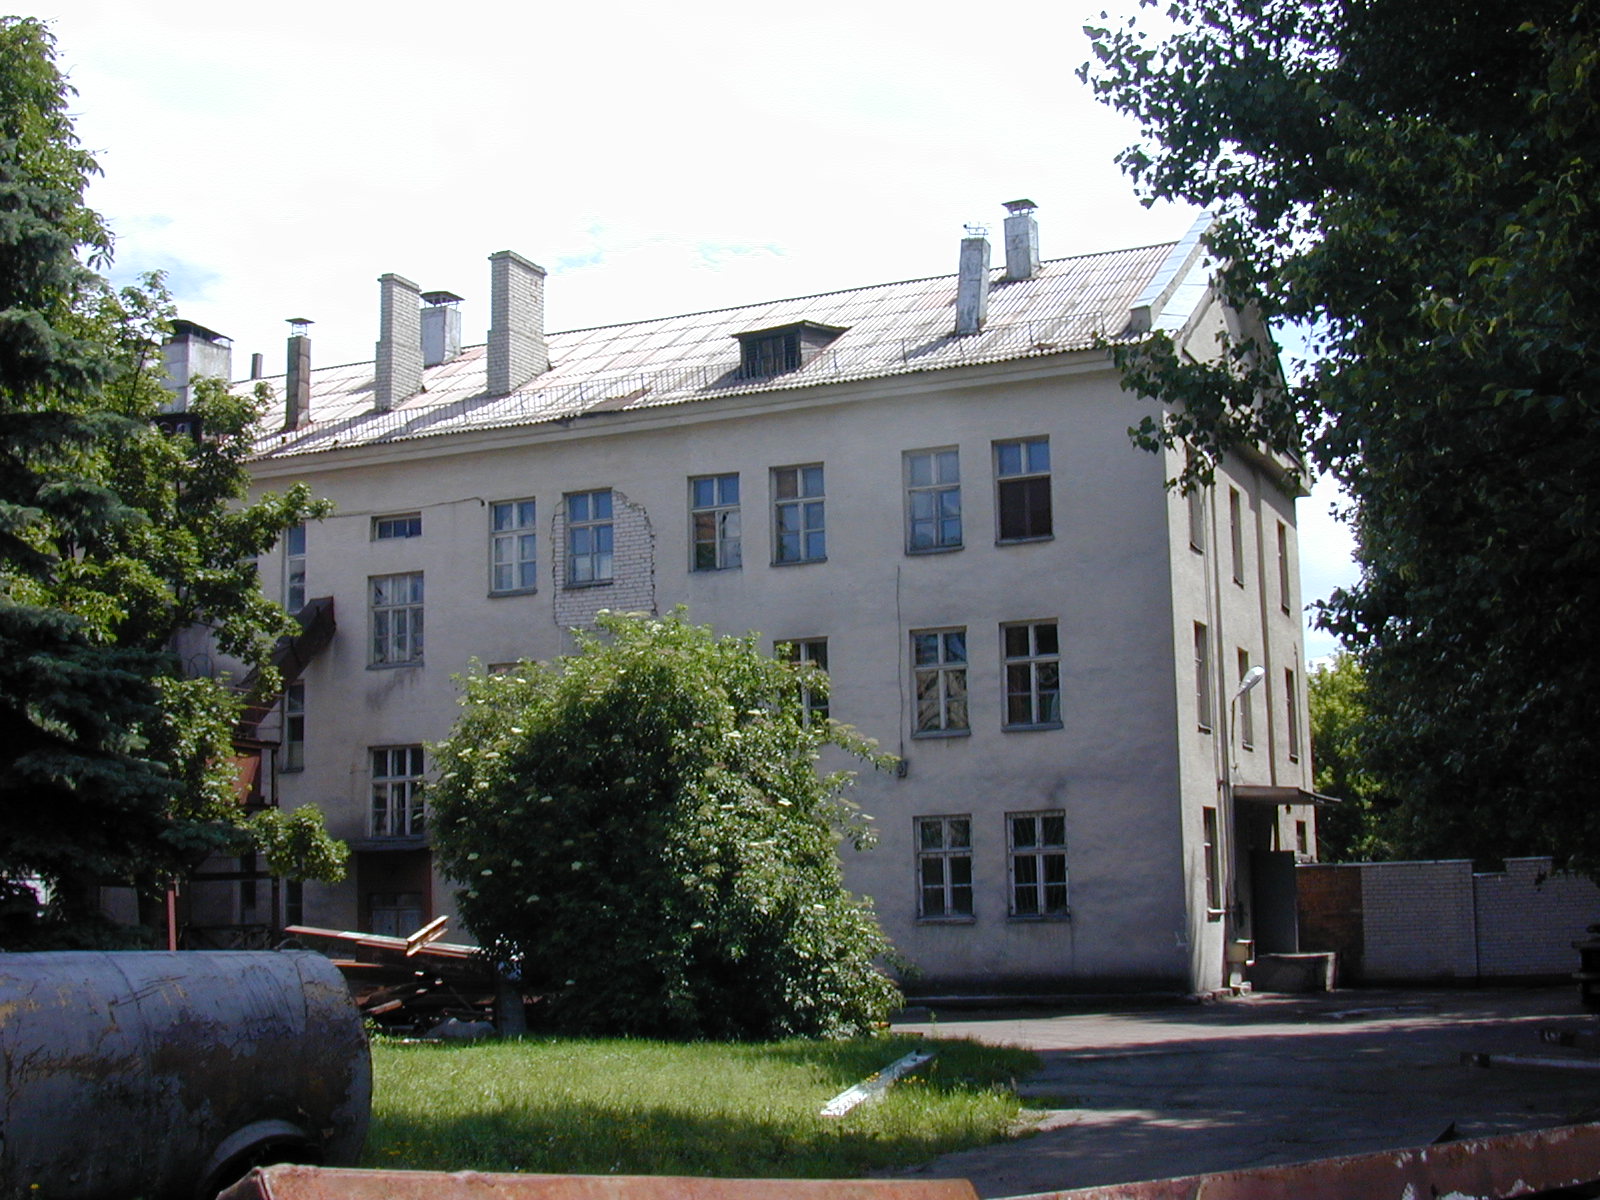 Saltoniškių g. 7, Vilnius